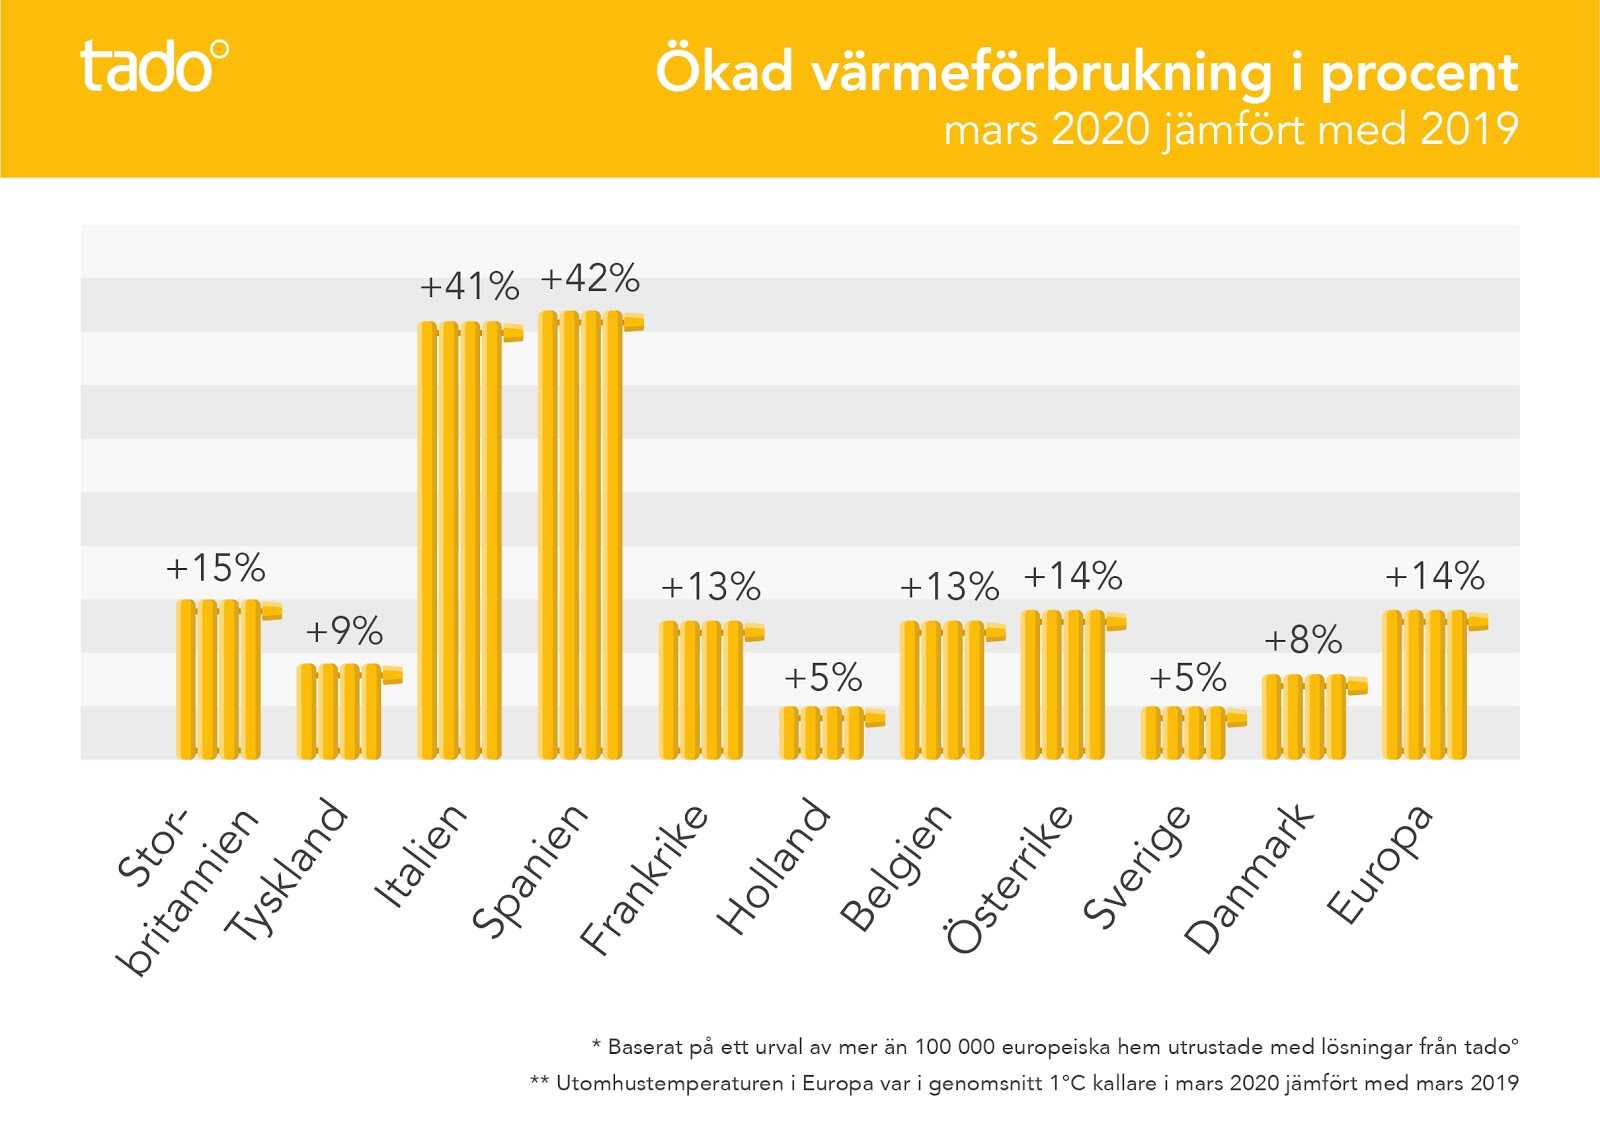 Ökad värmeförbrukning i svenska hushåll när fler arbetar hemifrån